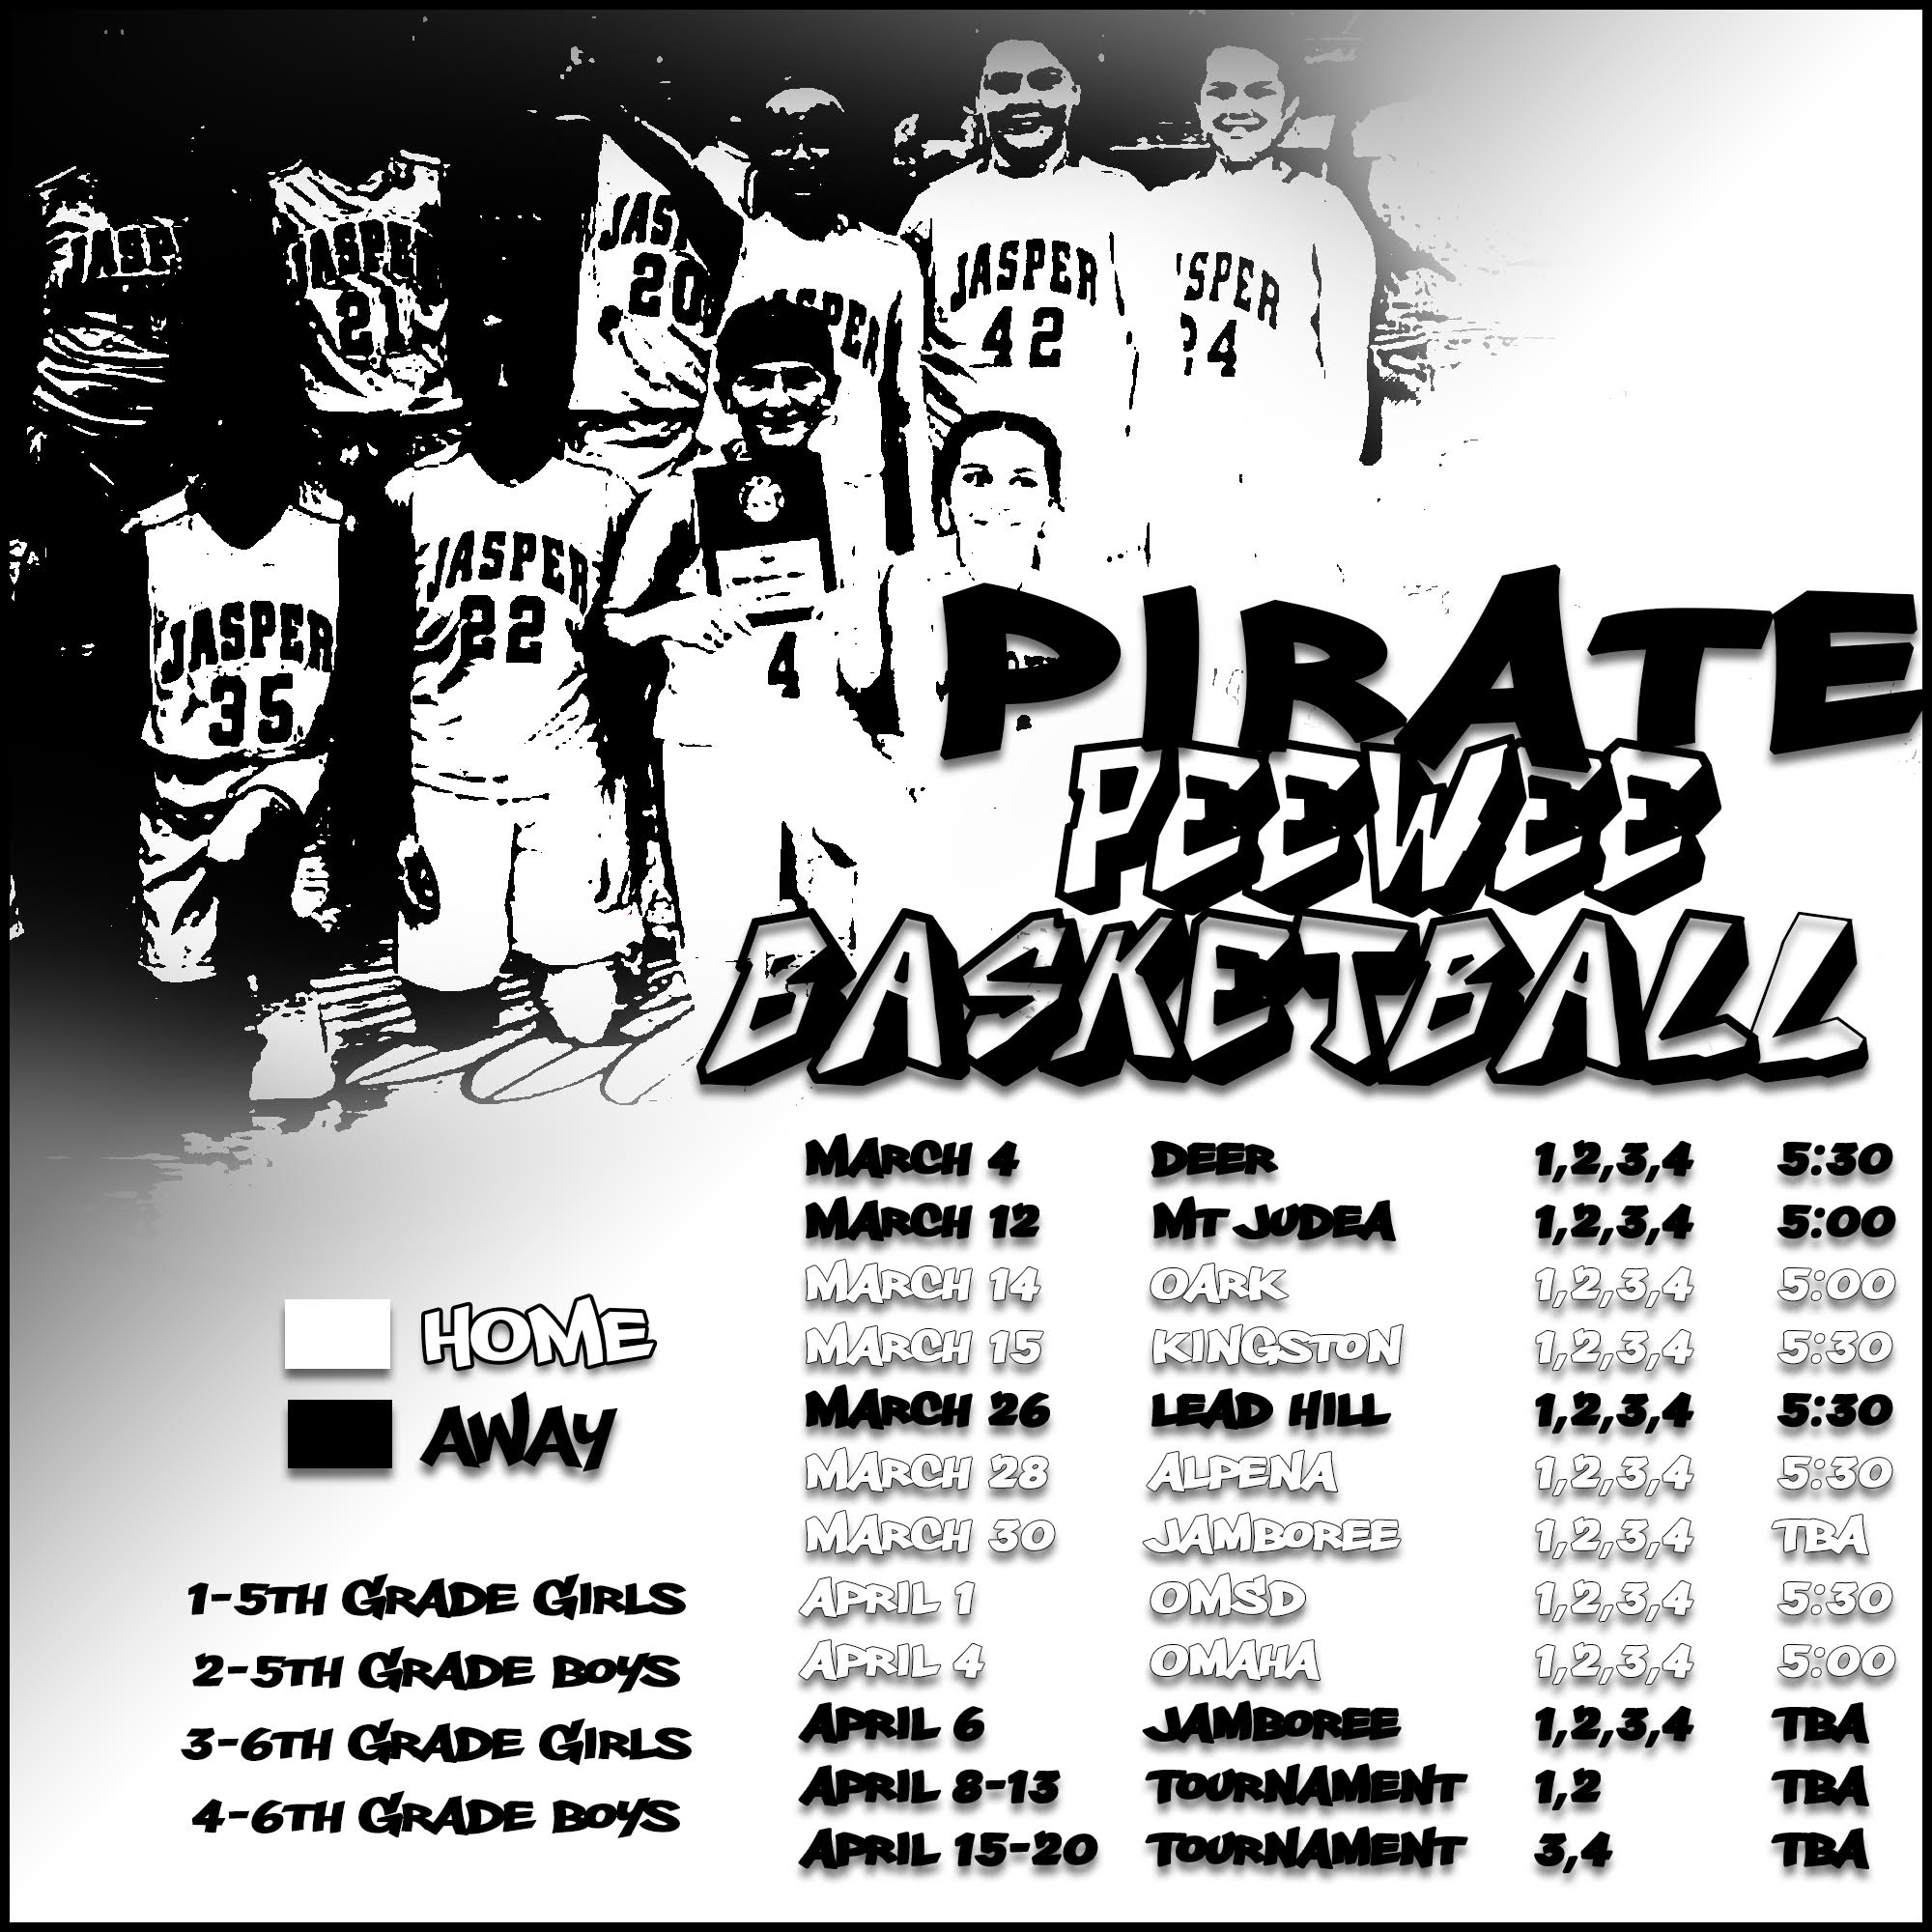 PeeWee Basketball Schedule